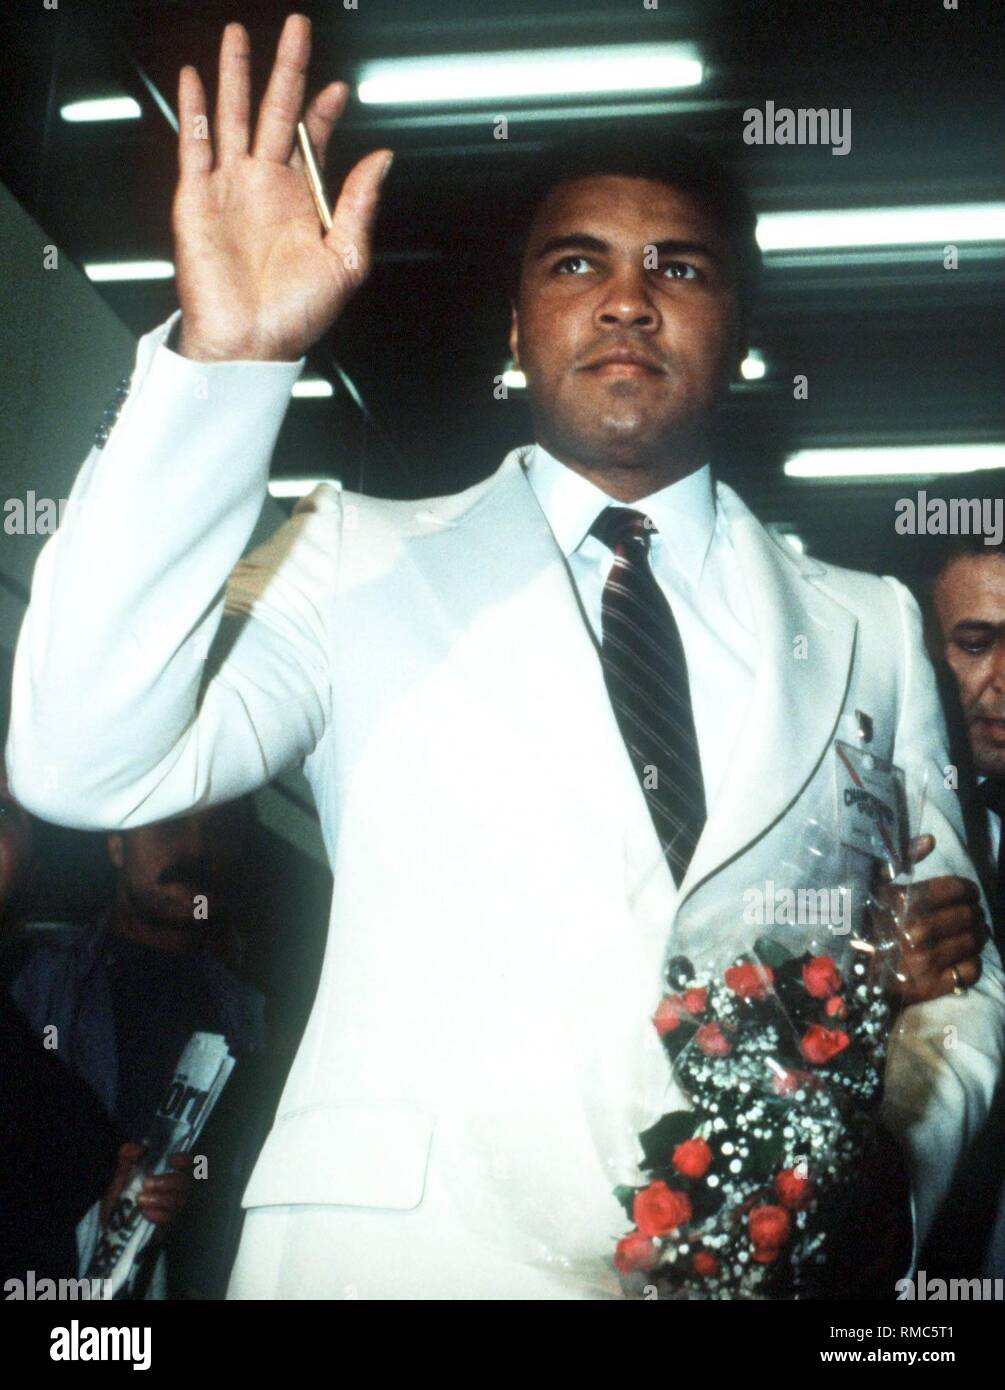 Muhammad Ali (nato Cassio Marcello argilla), un American boxer professionale. Ali ha rivoluzionato il pugilato negli anni sessanta, perché egli non era come le altre materie e ingombrante, ma era molto bello e veloce. Egli ha ballato intorno i suoi avversari, schivare gli attacchi con sorprendente riflessi, poi improvvisamente a sbattere con un fulmineo combinazioni. Foto Stock